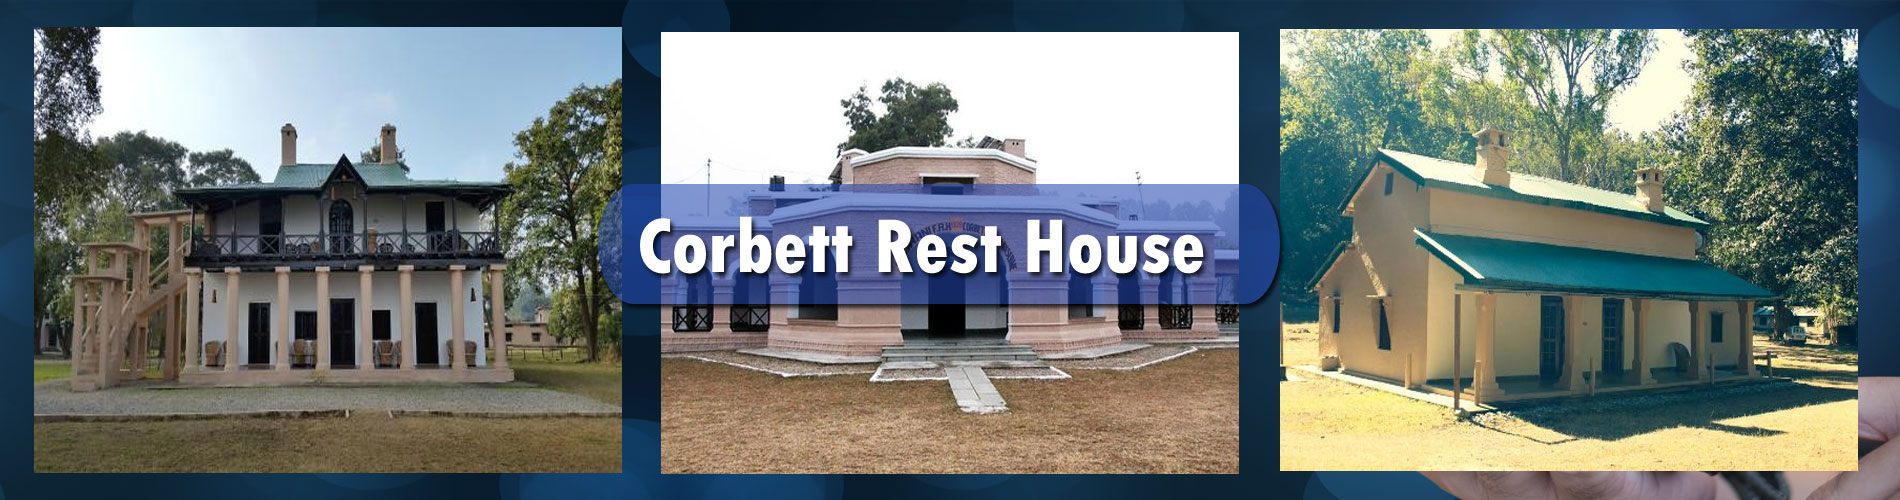 Corbett Forest Rest House